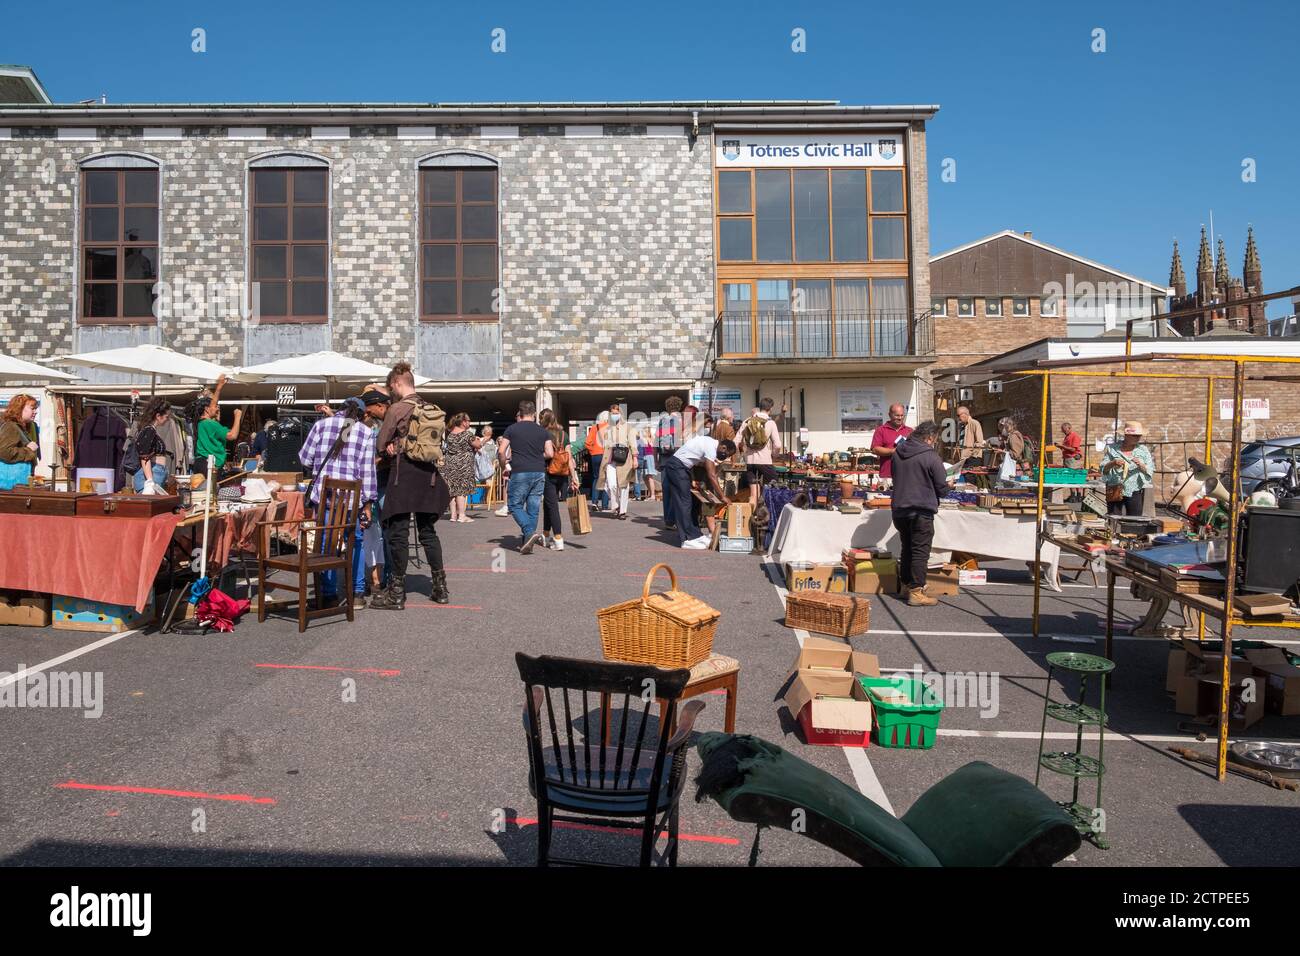 Le marché en plein air au Guildhall, dans la ville historique de Totnes, dans le sud de Hams, Devon, Royaume-Uni Banque D'Images